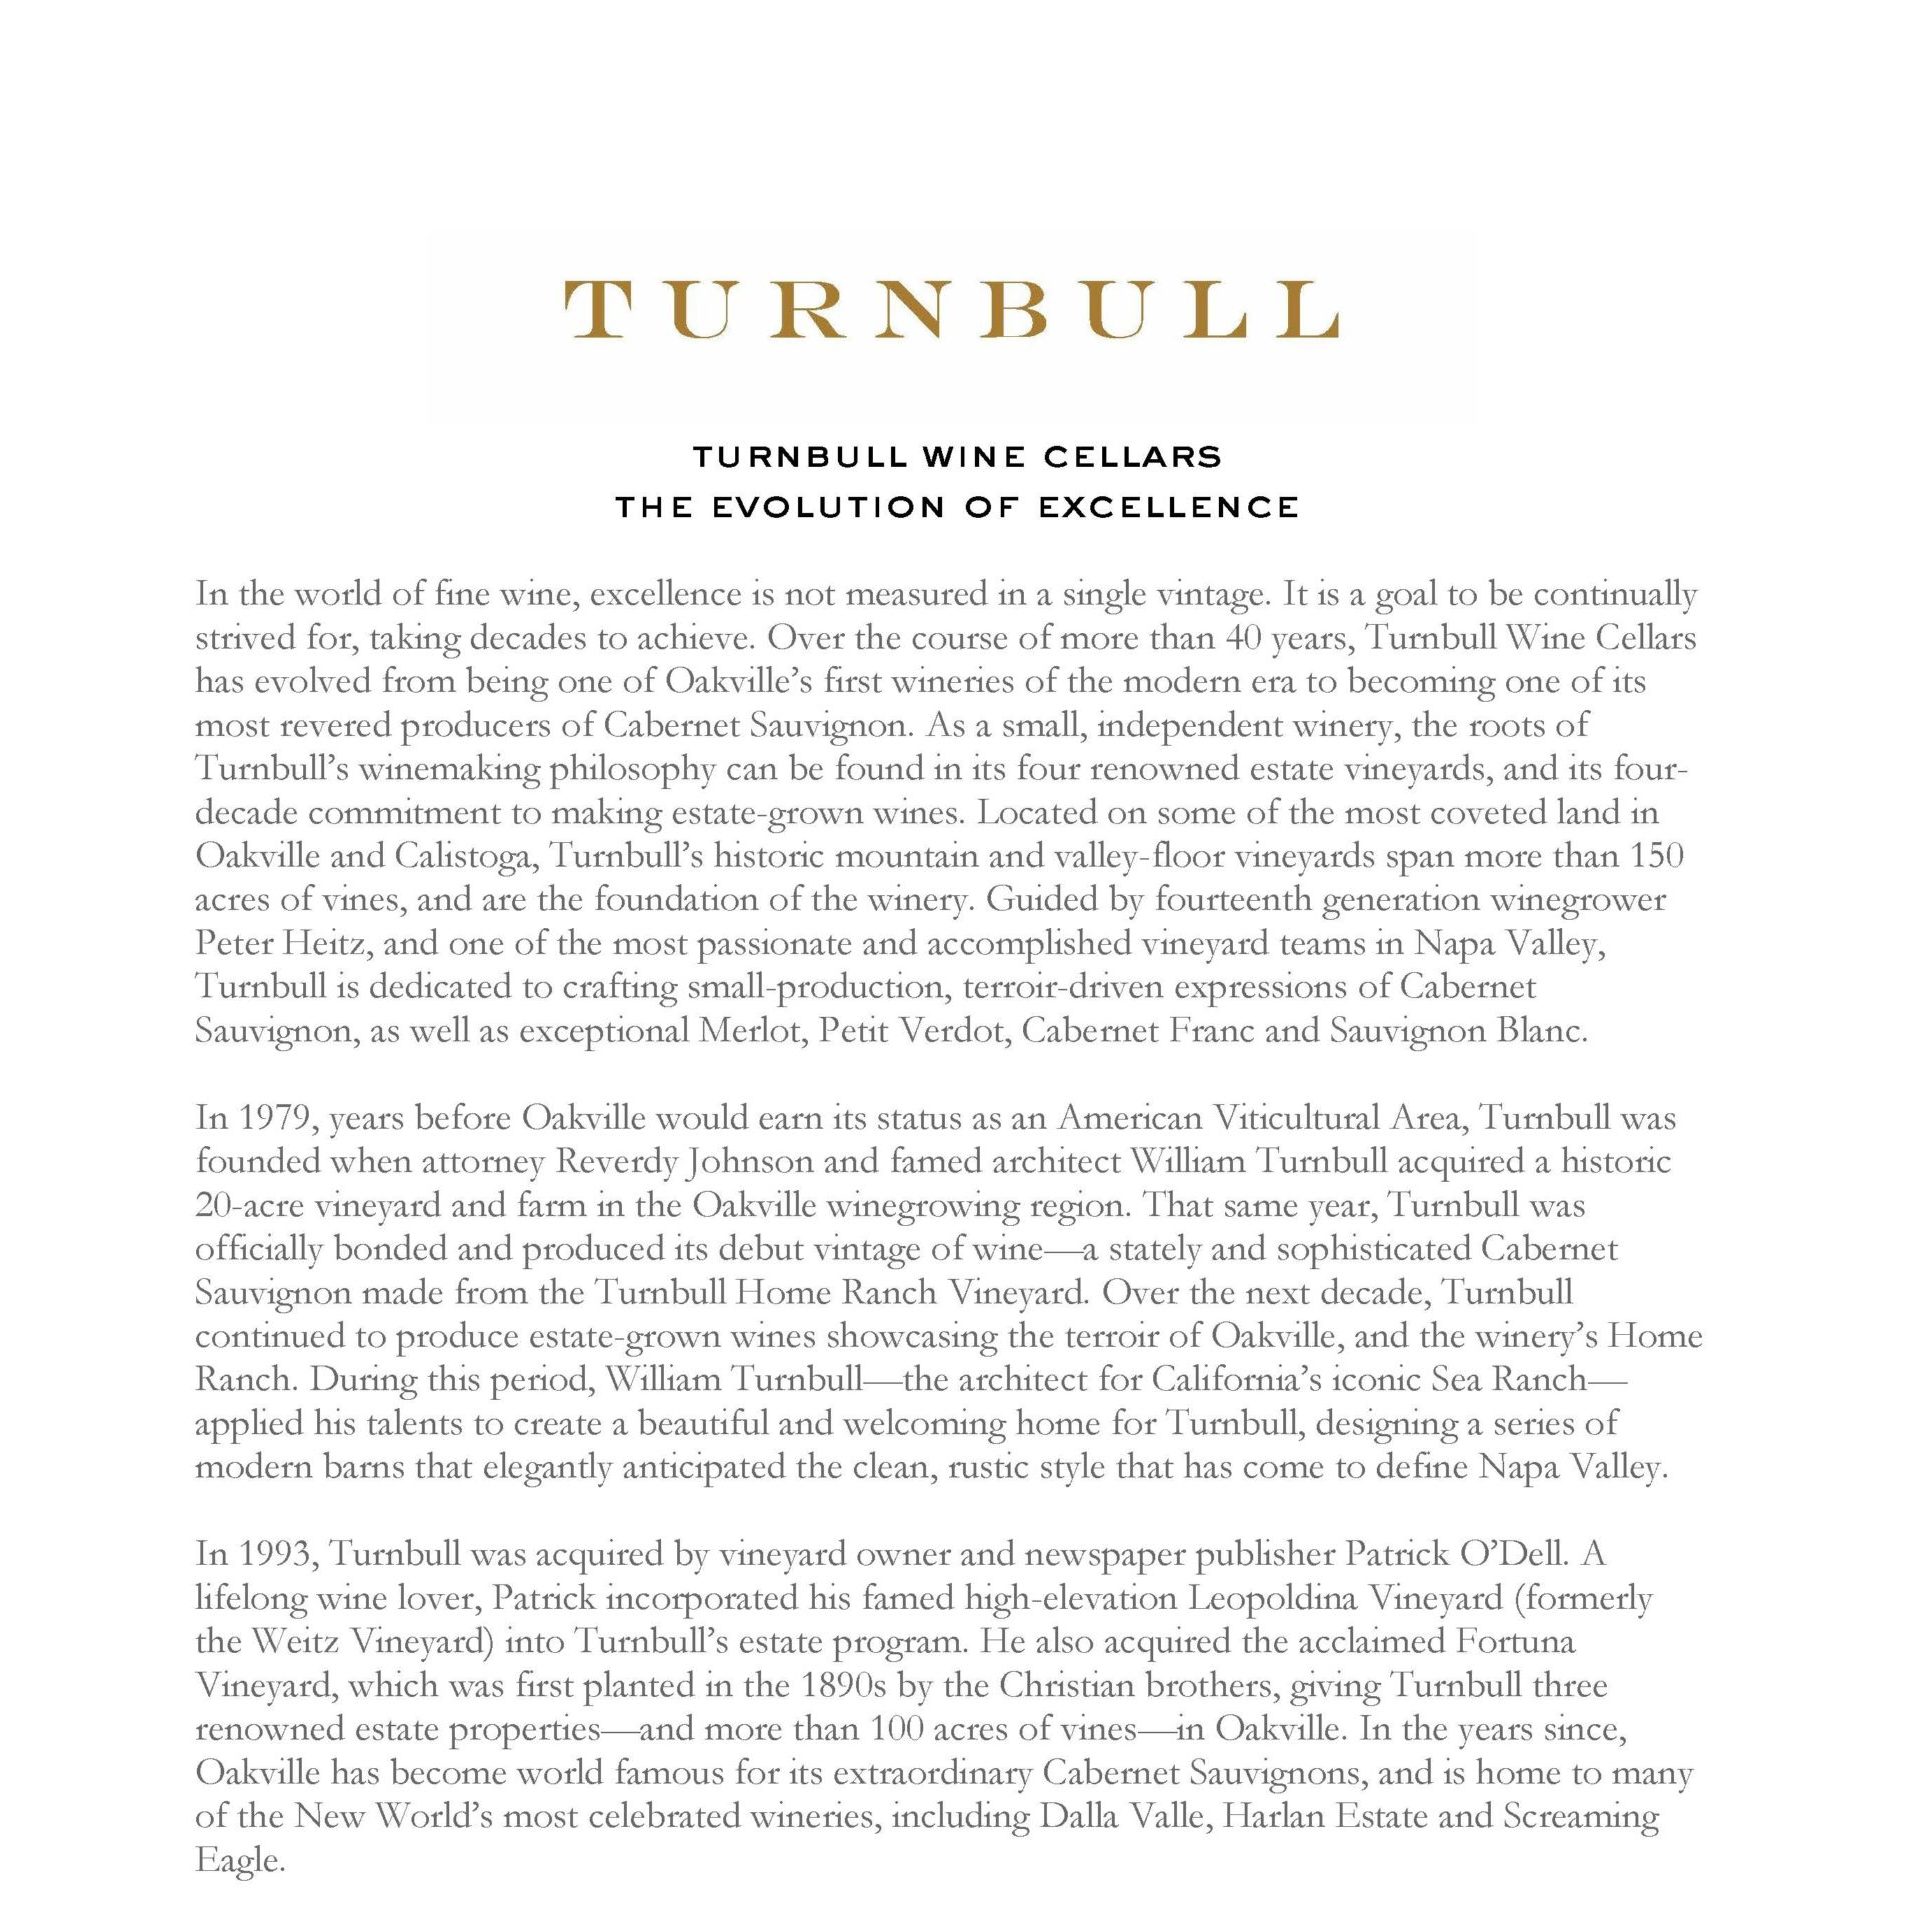 TURNBULL'S VINEYARDS